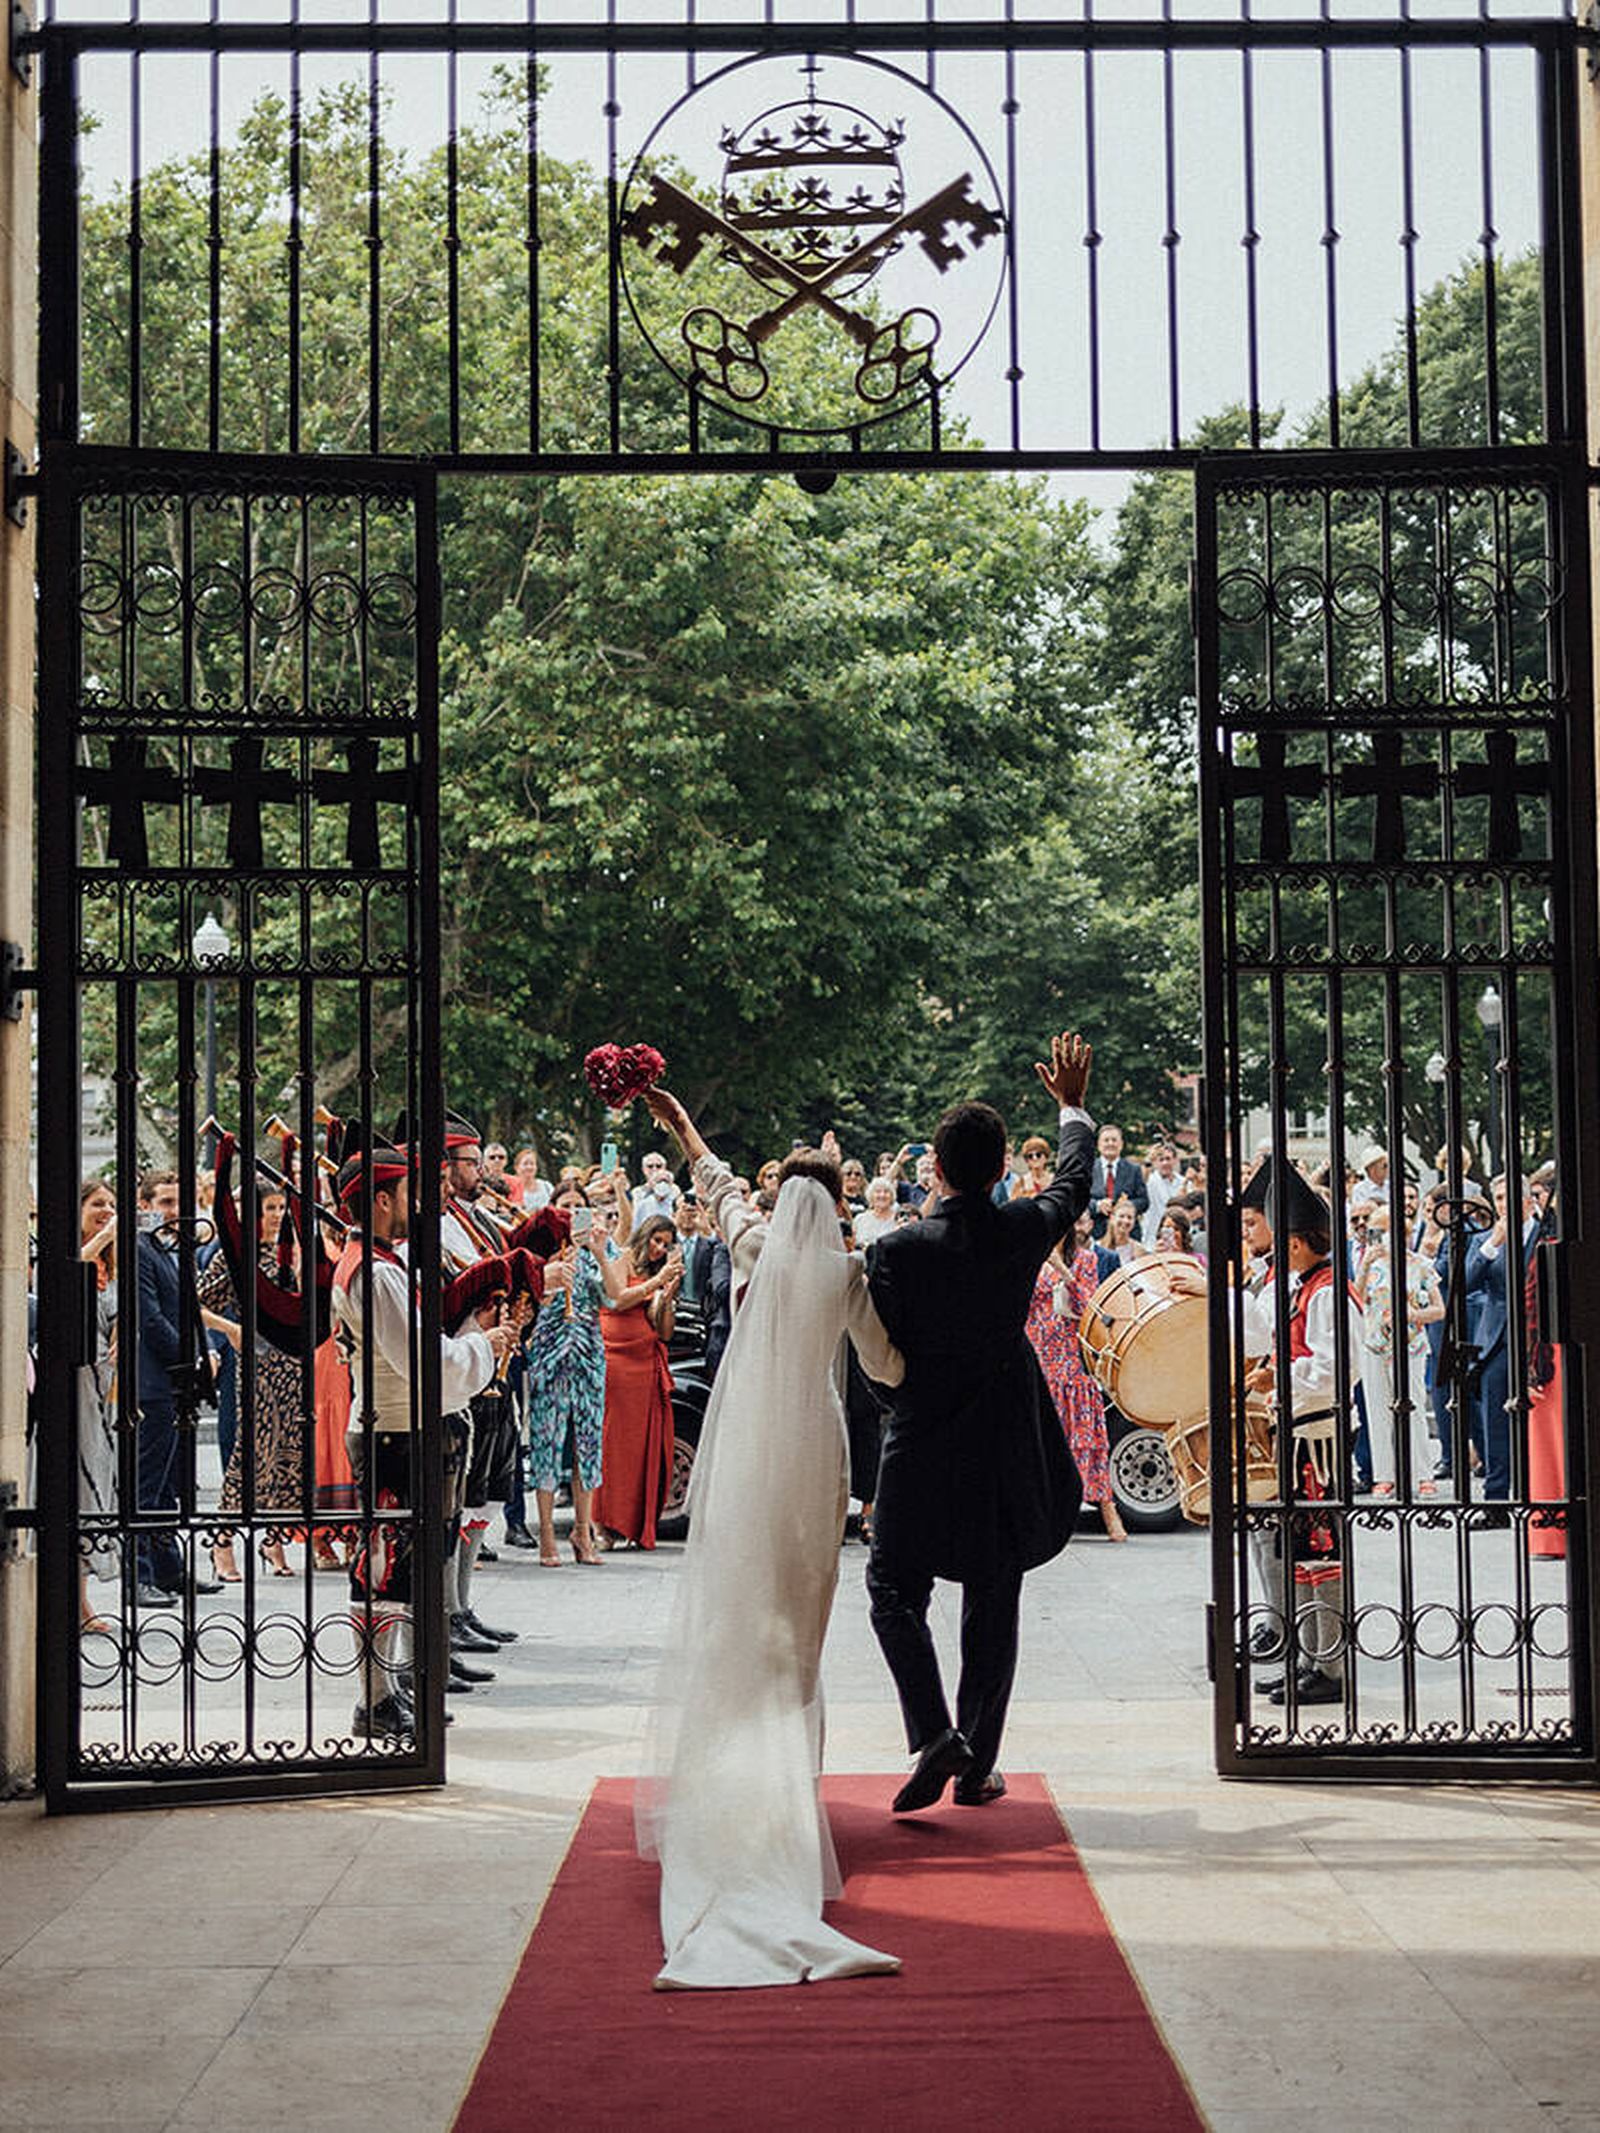 el día de míriam: boda en gijón, vestido de novia elegante y ramo de hortensias